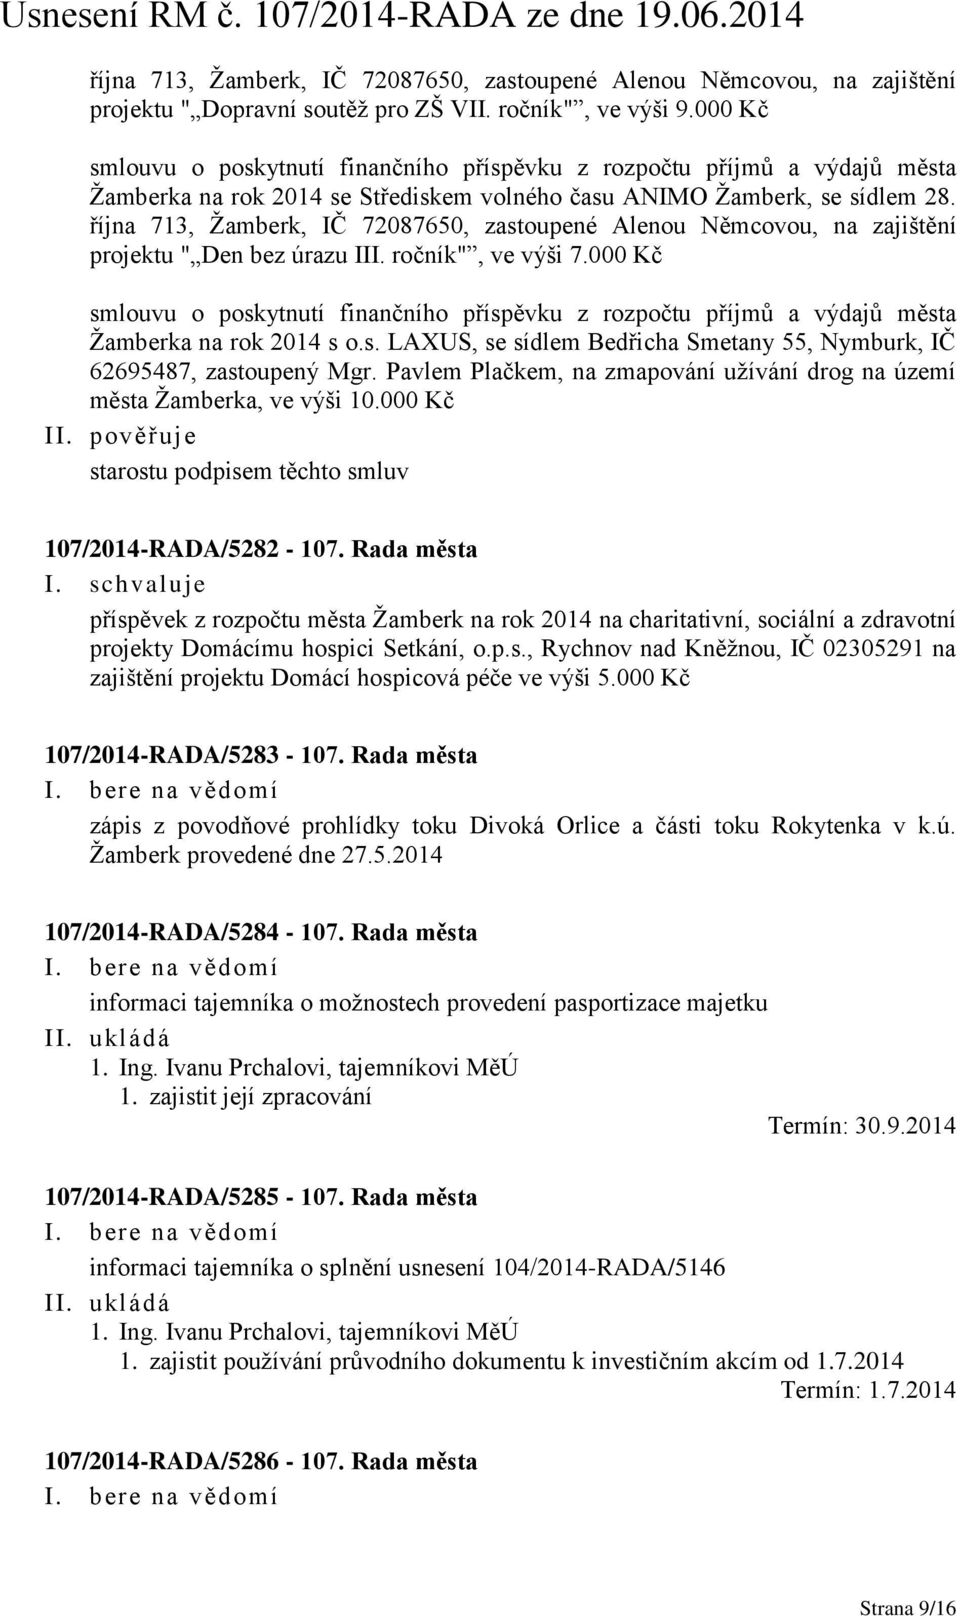 října 713, Žamberk, IČ 72087650, zastoupené Alenou Němcovou, na zajištění projektu " Den bez úrazu III. ročník", ve výši 7.